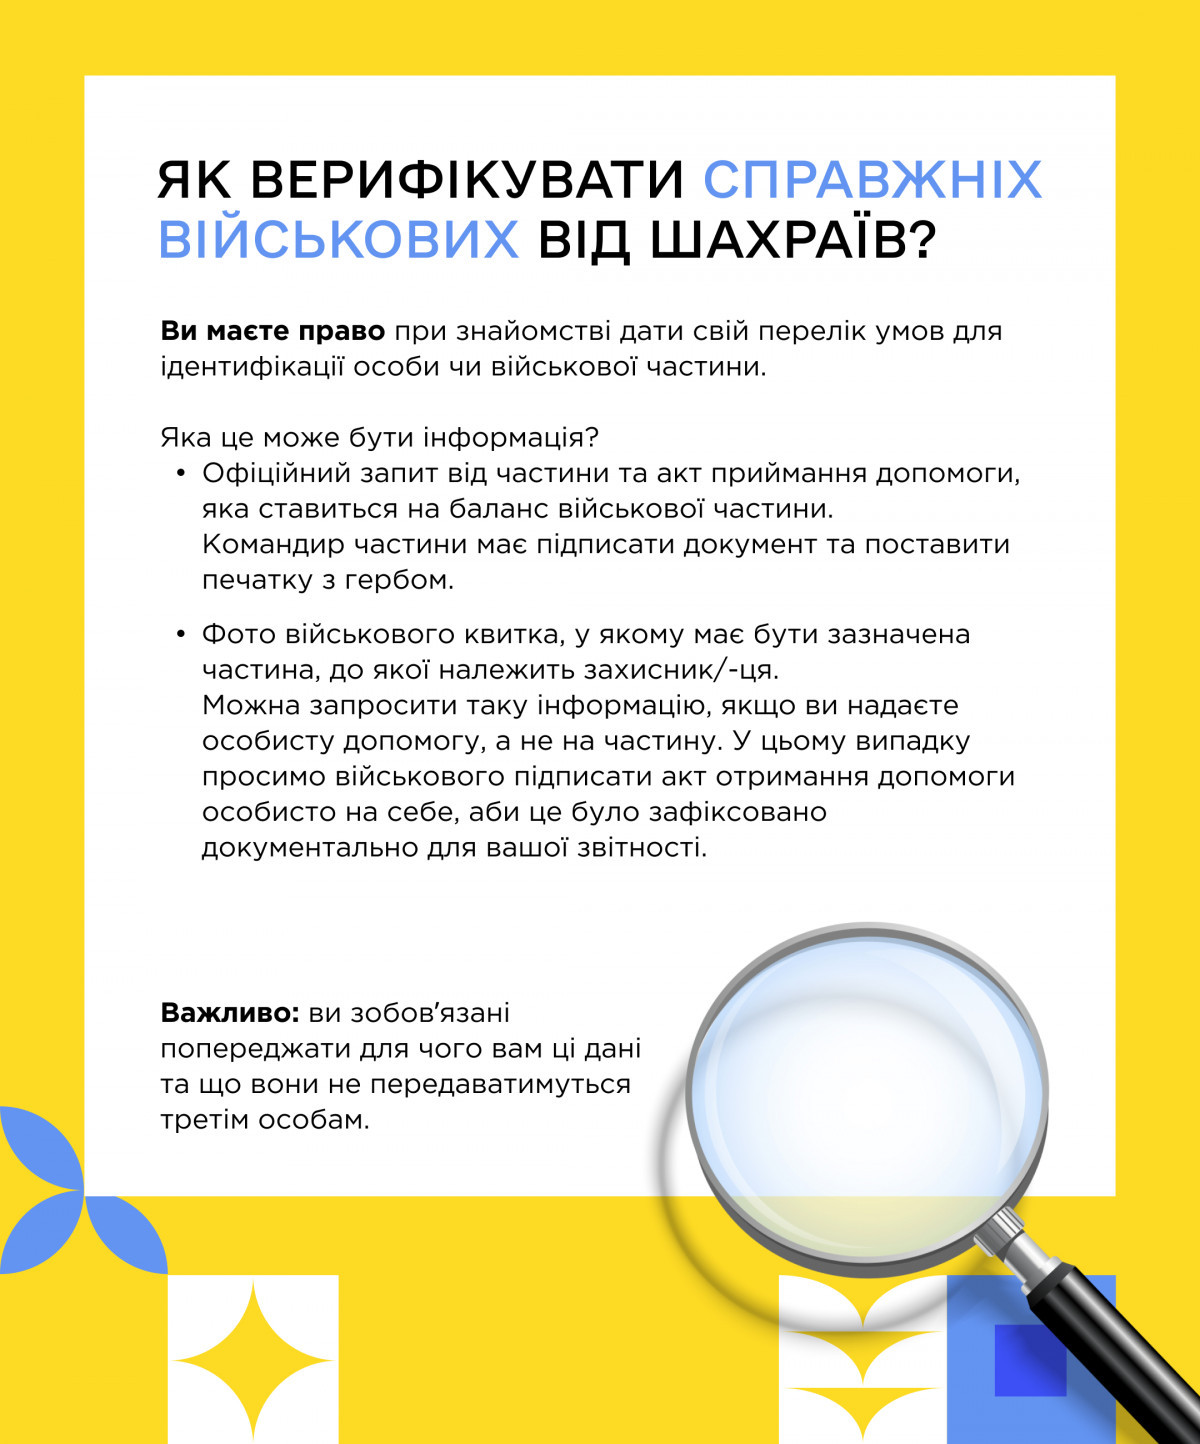 Як ефективно допомагати армії: Українська волонтерська служба опублікувала пам'ятку з порадами - зображення